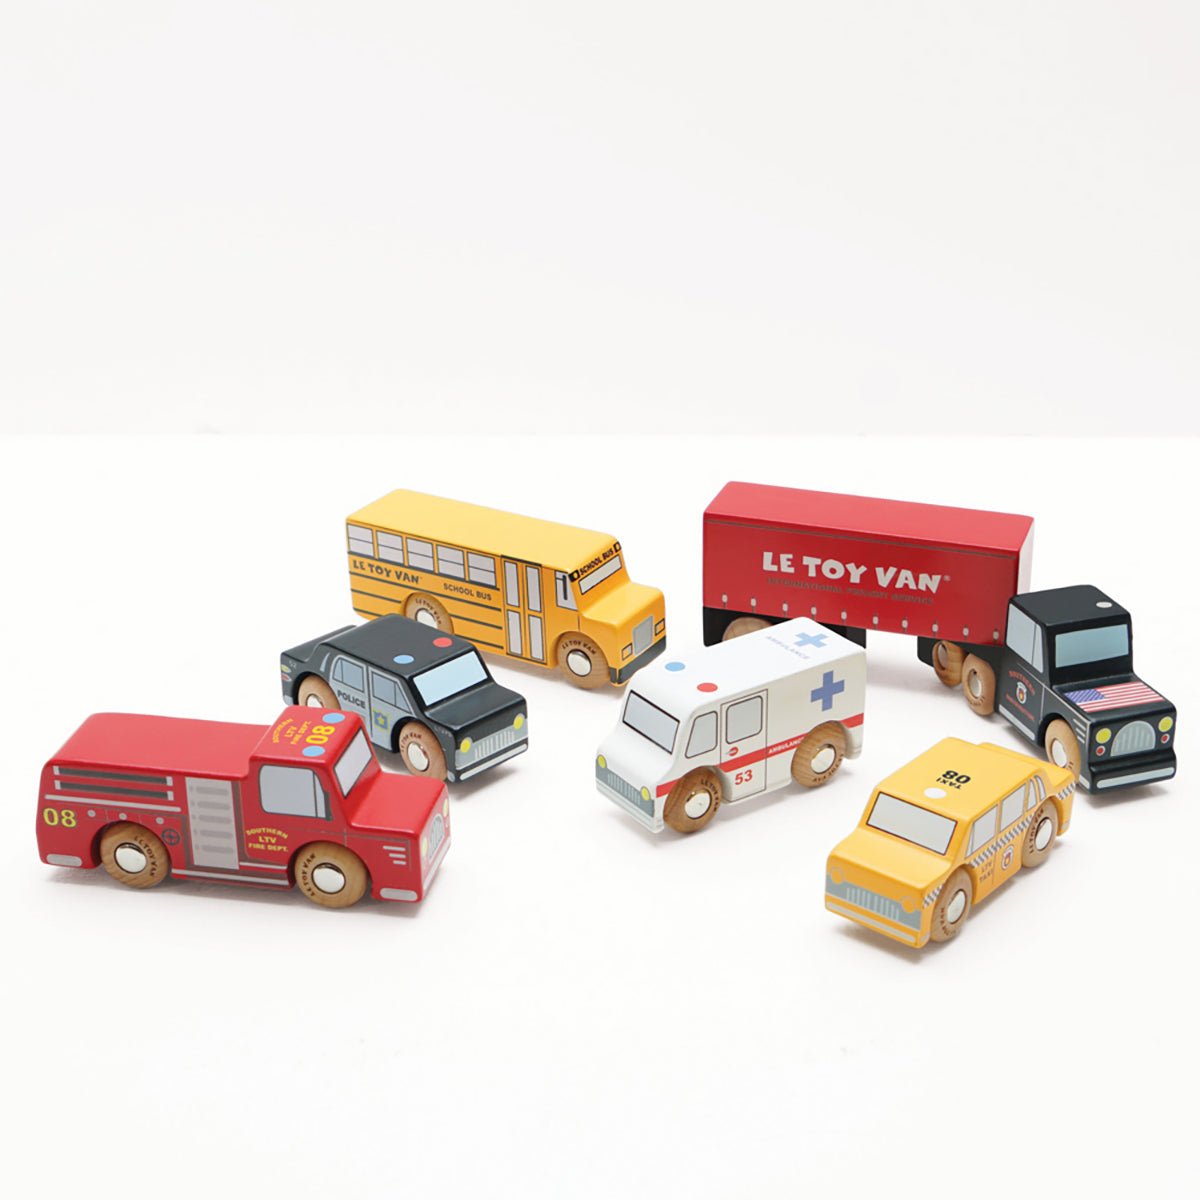 Le Toy Van New York Car set | Le Toy Van